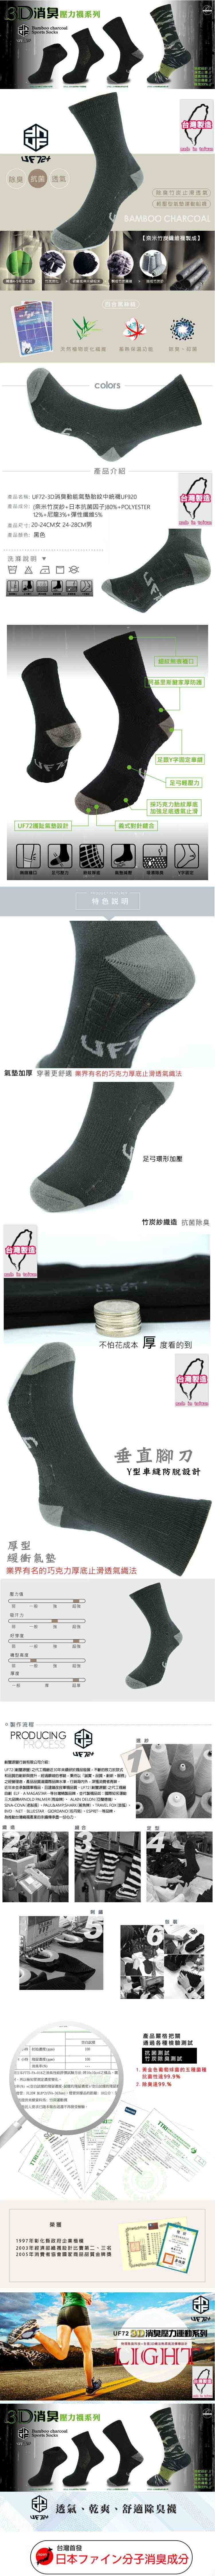 【UF72+】UF920 消臭動能氣墊胎紋氣墊襪 1